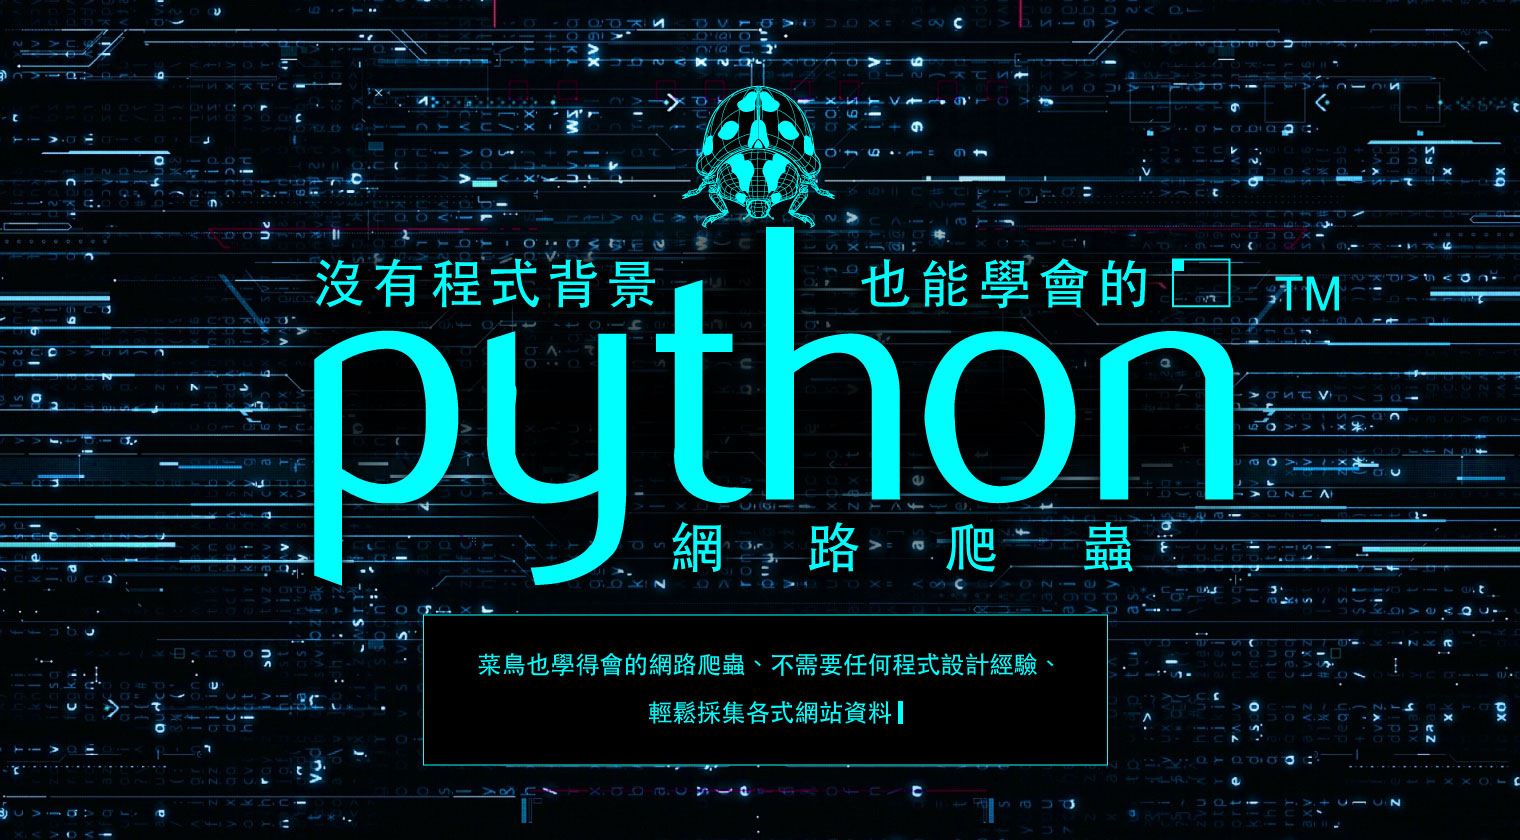 沒有程式背景也能學會的Python網路爬蟲 - MasterTalks 內容電力公司